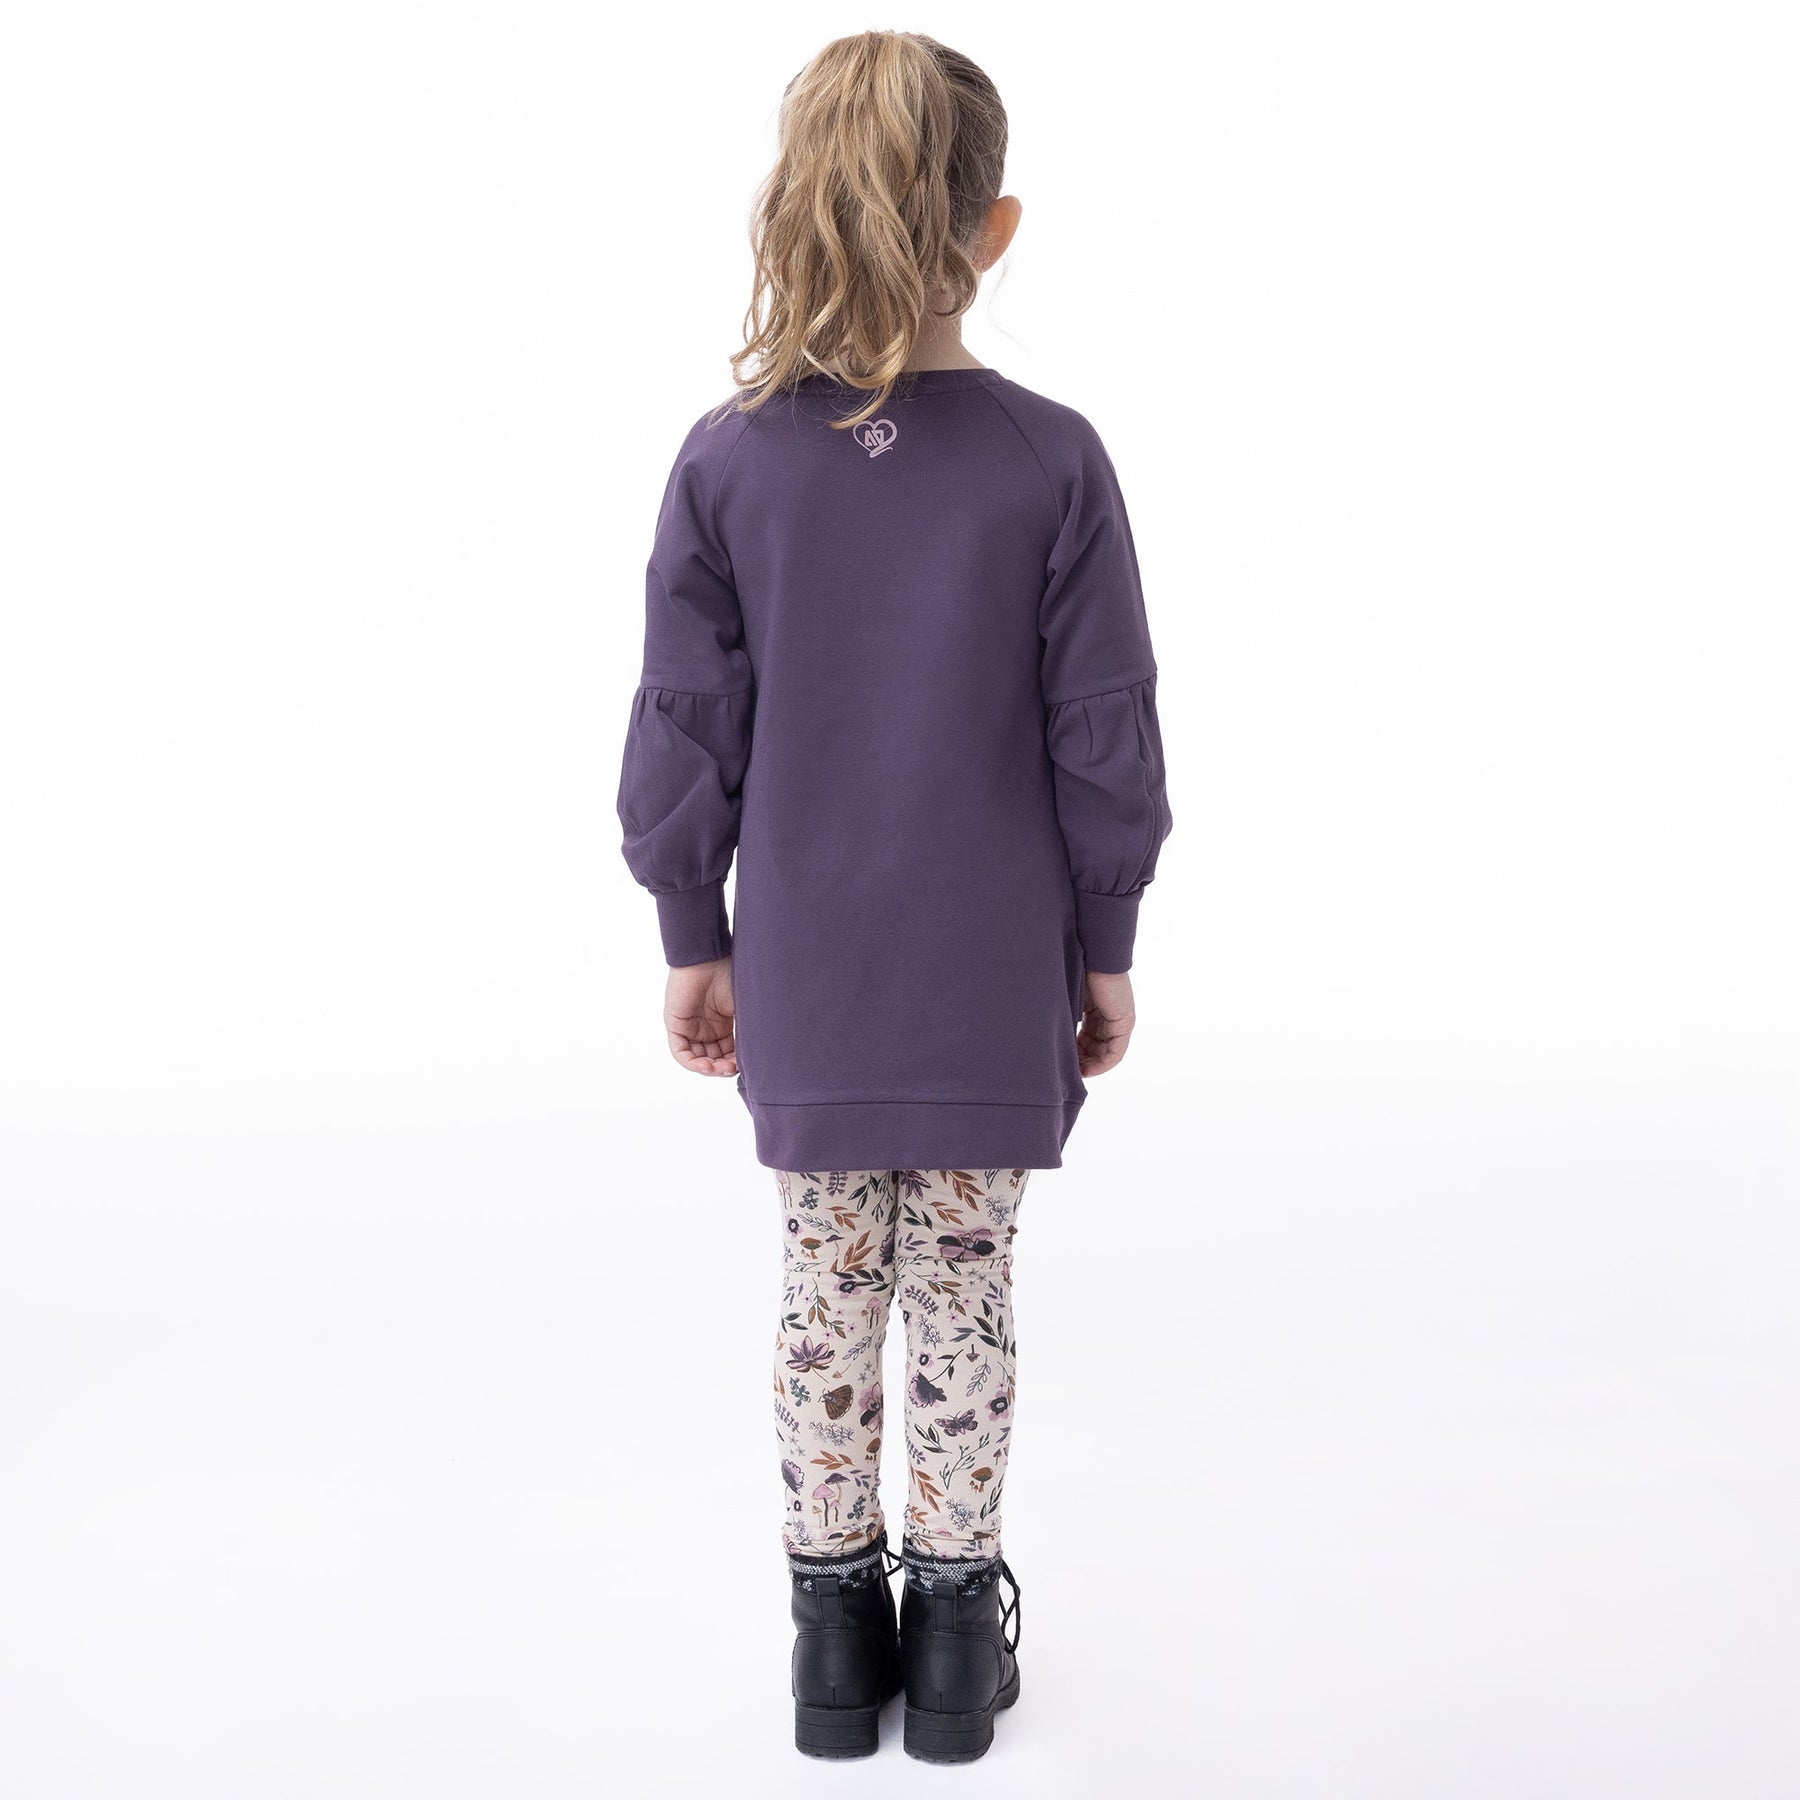 Legging pour enfant fille par Nanö | F2302-11 Beige | Boutique Flos, vêtements mode pour bébés et enfants